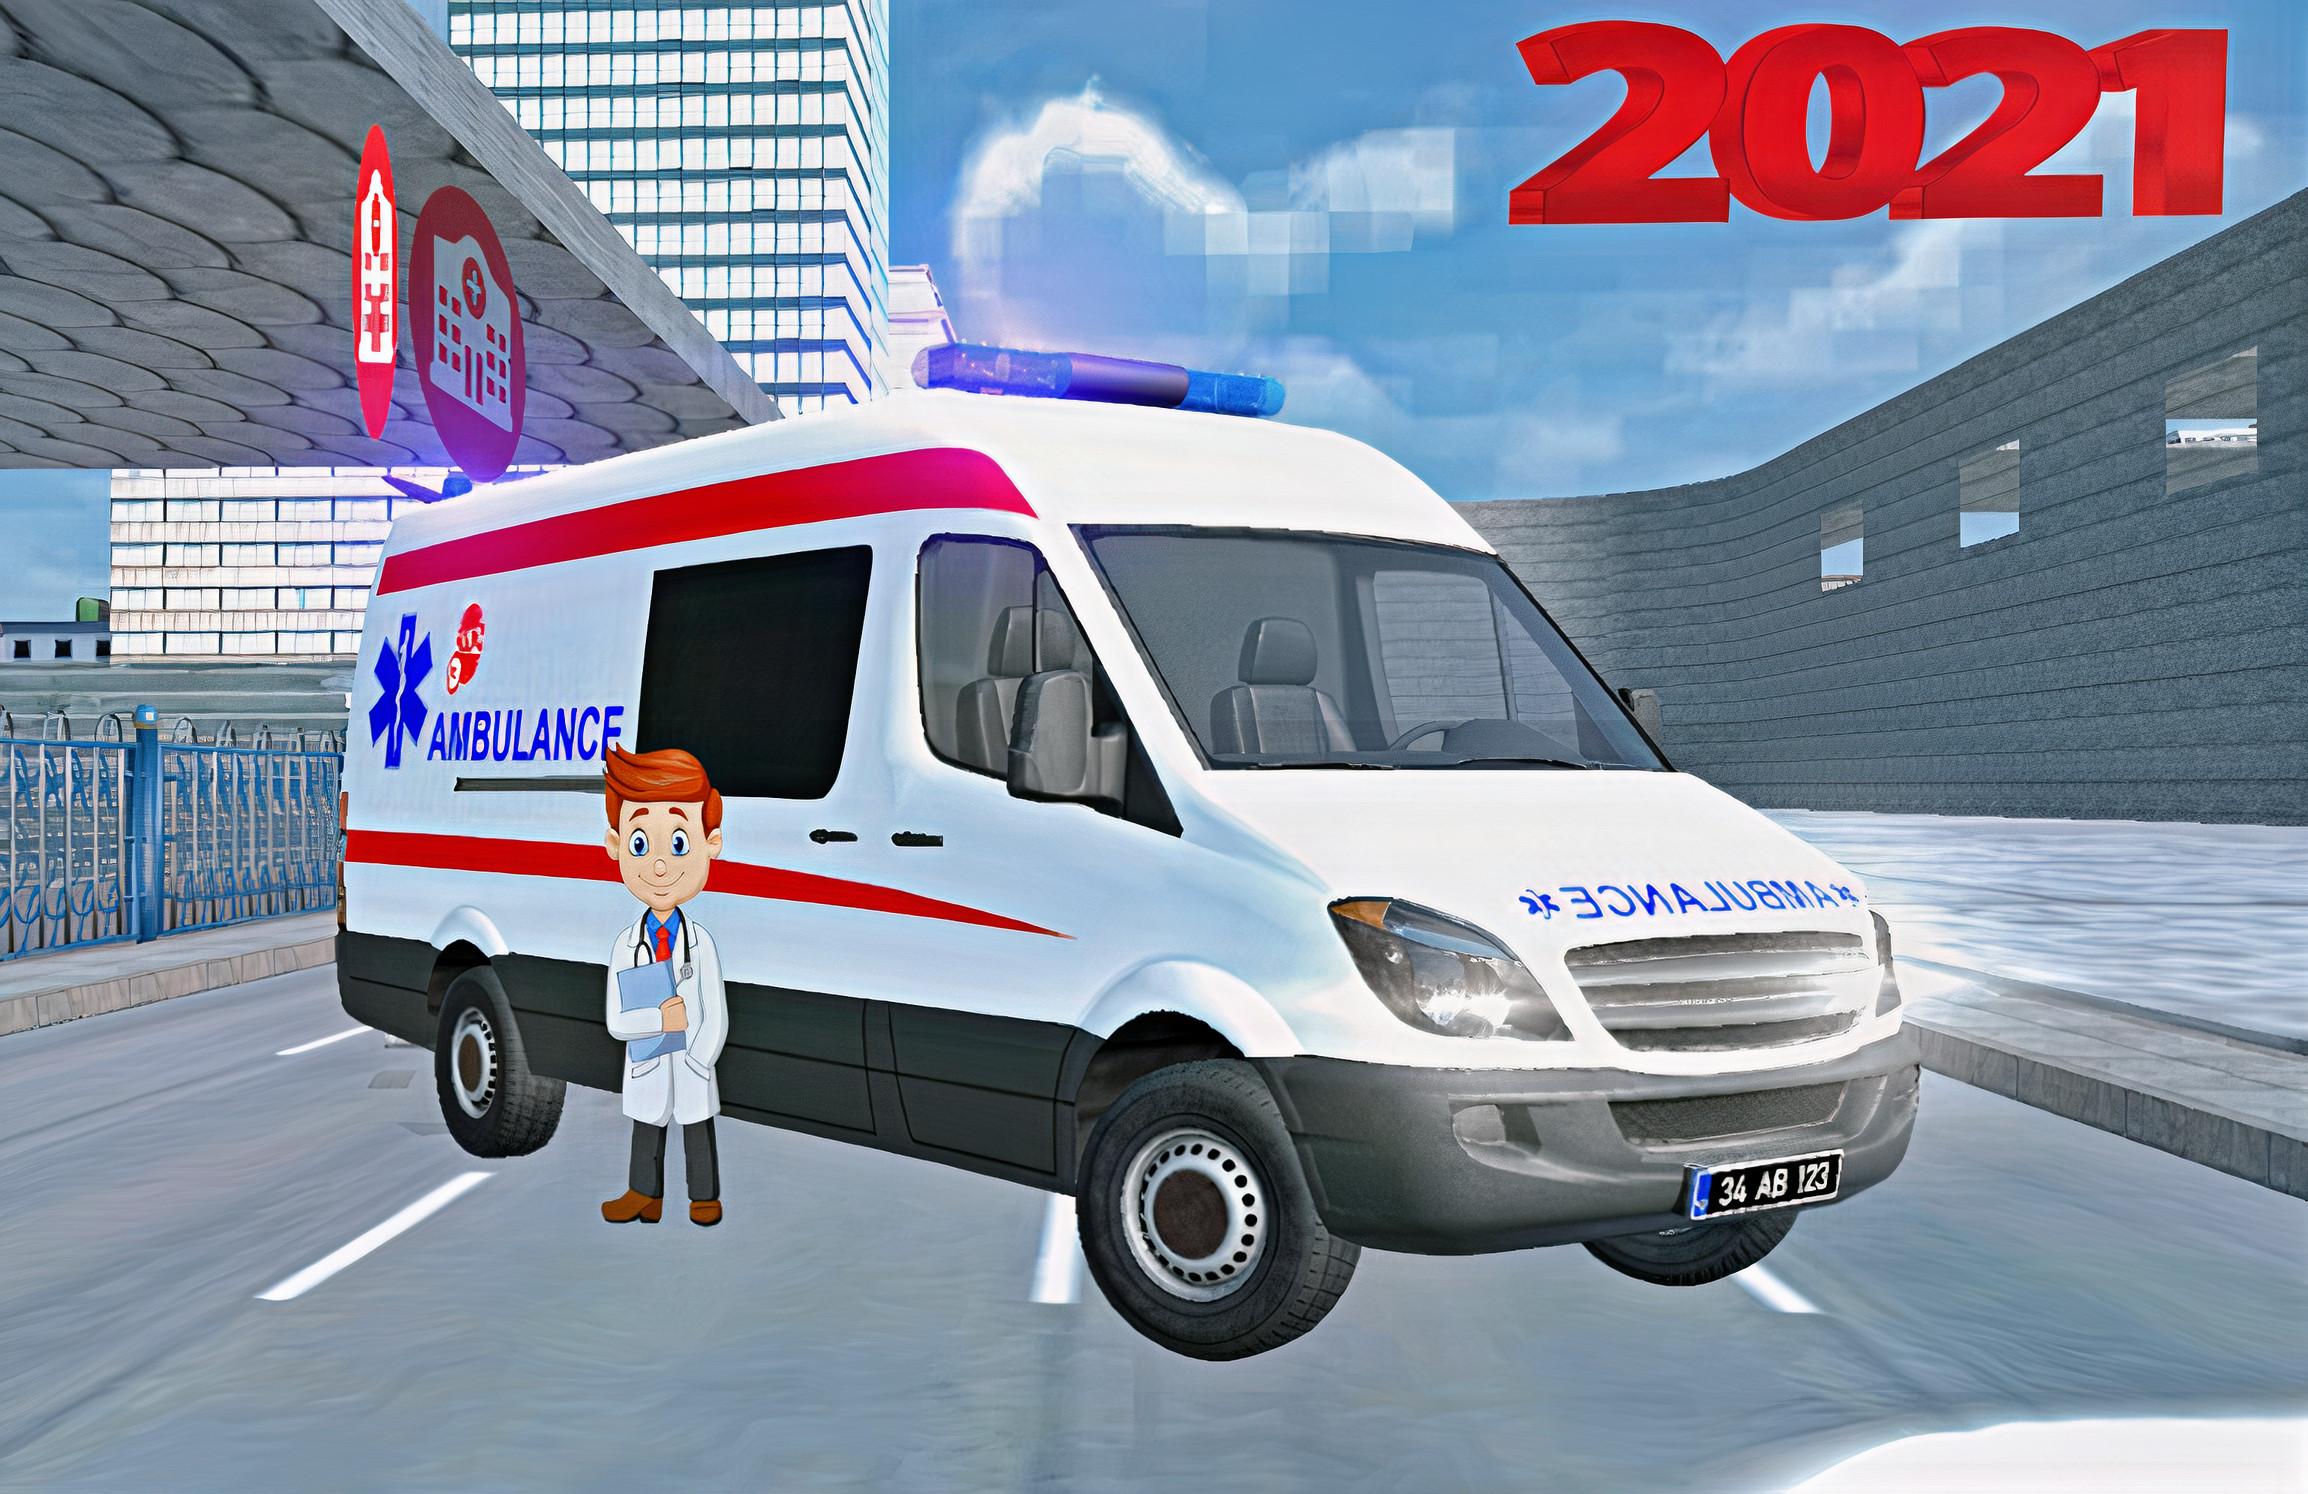 Real 112 Ambulance Car Game: Ambulance Games 2021 1.1 Screenshot 4